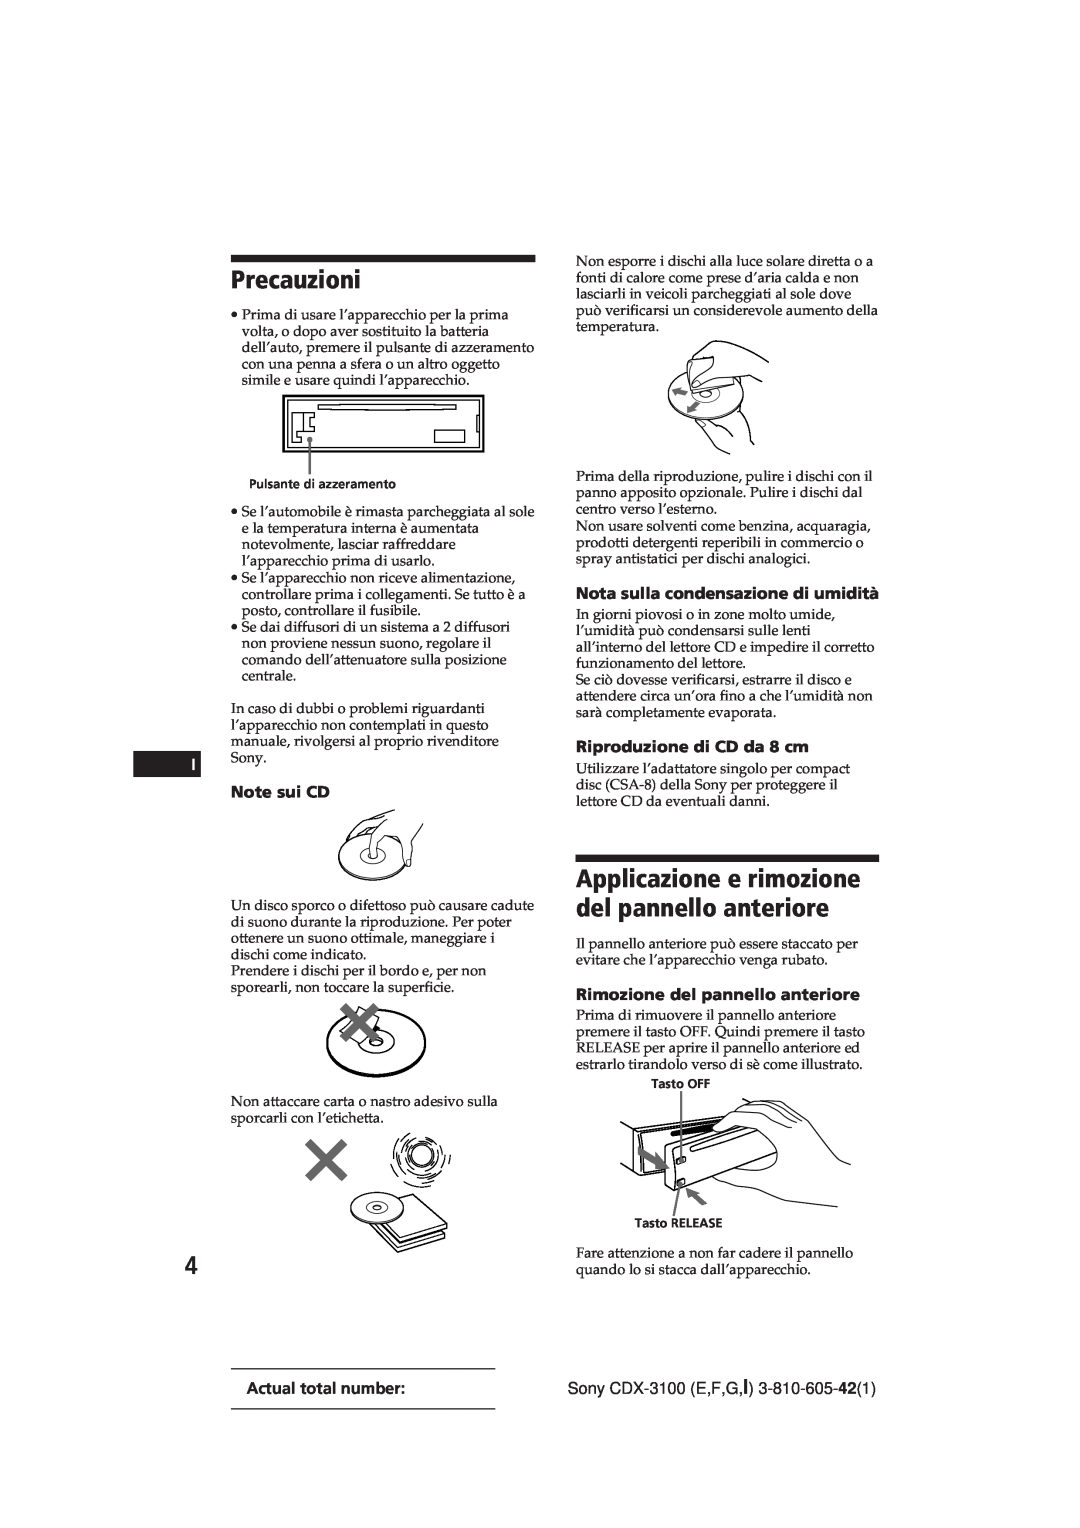 Sony CDX-3100 manual Precauzioni, Applicazione e rimozione del pannello anteriore, Note sui CD, Riproduzione di CD da 8 cm 